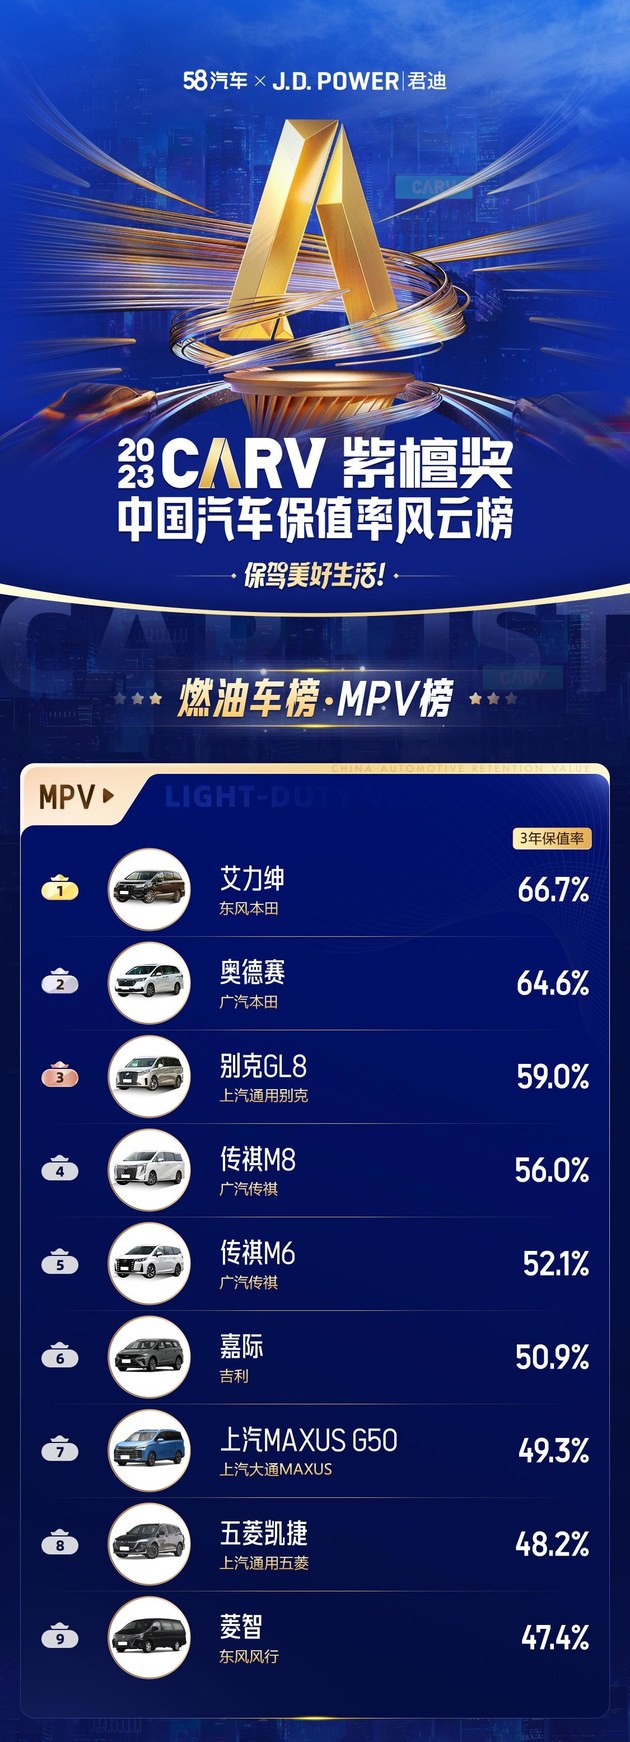 东风本田艾力绅3年66.7%获MPV保值率之王 奥德赛 GL8紧随其后